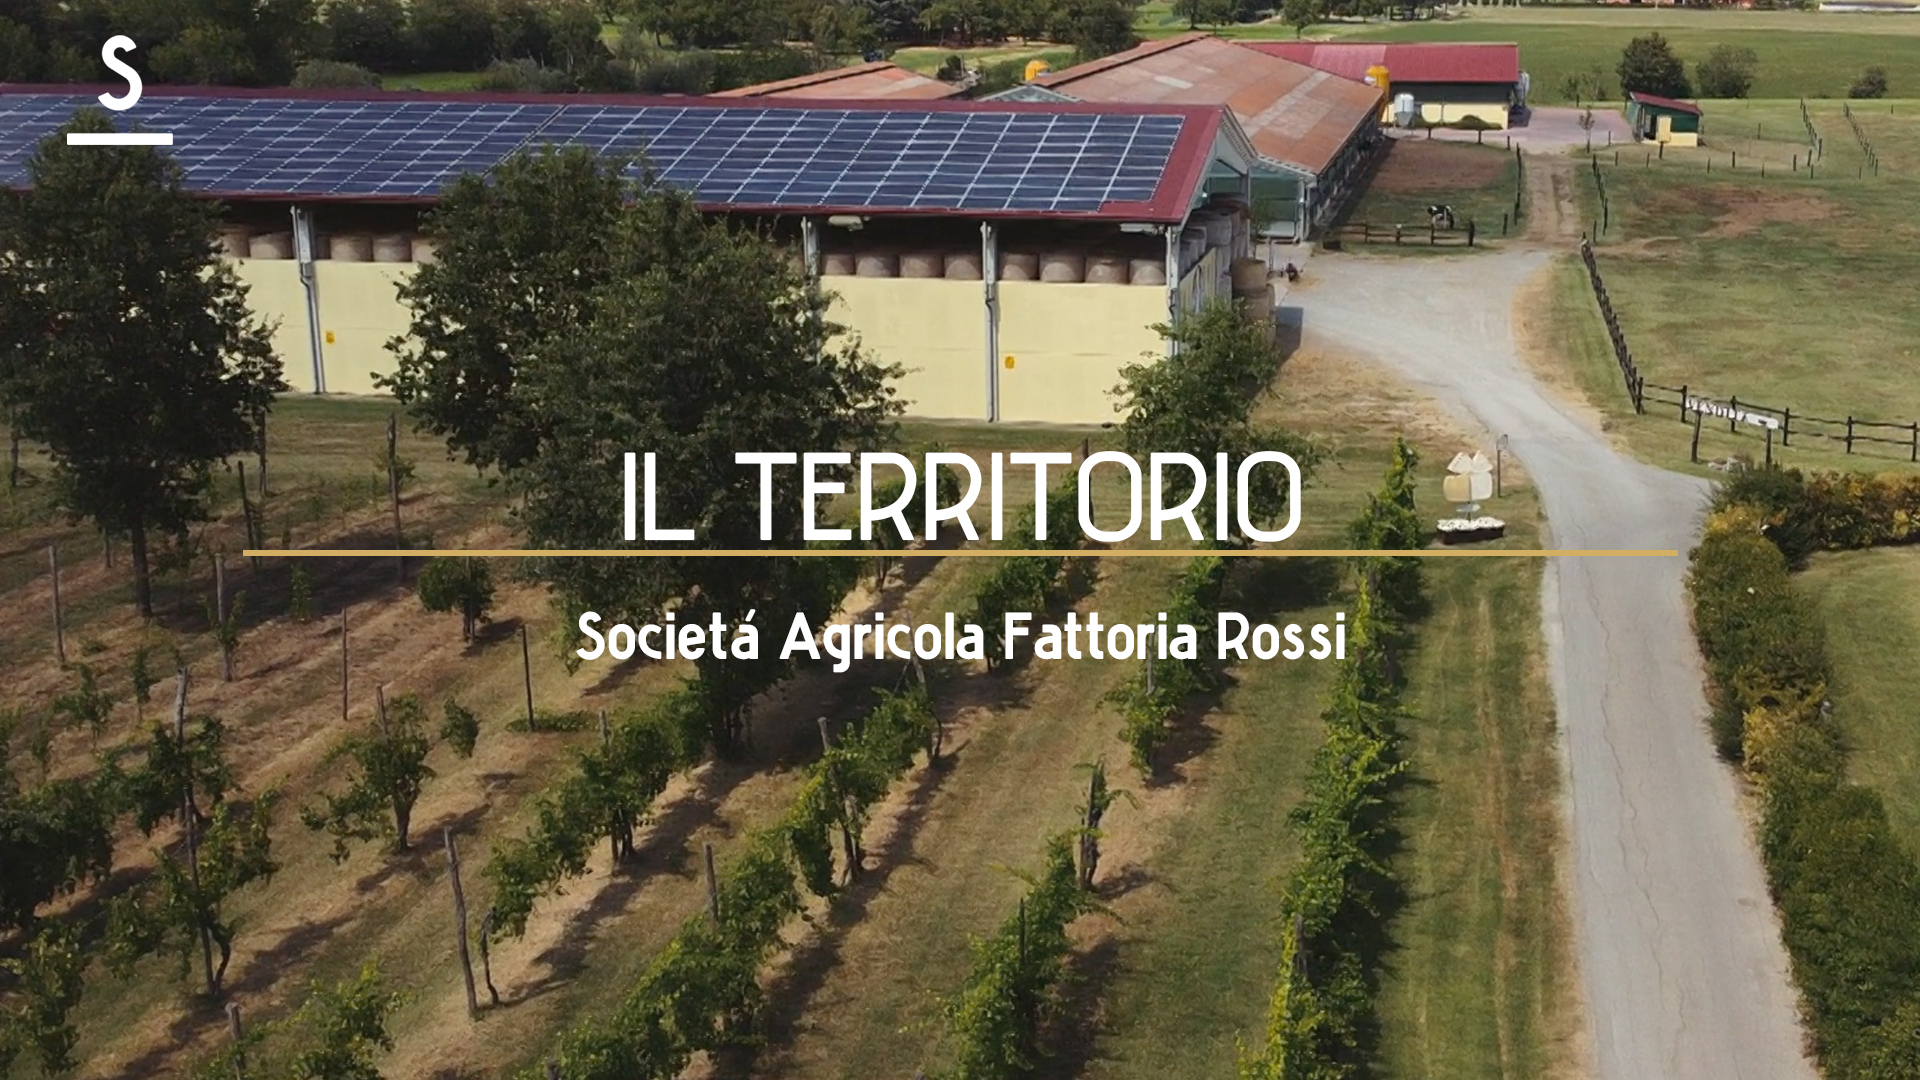 Scaglie presenta: Società Agricola Fattoria Rossi